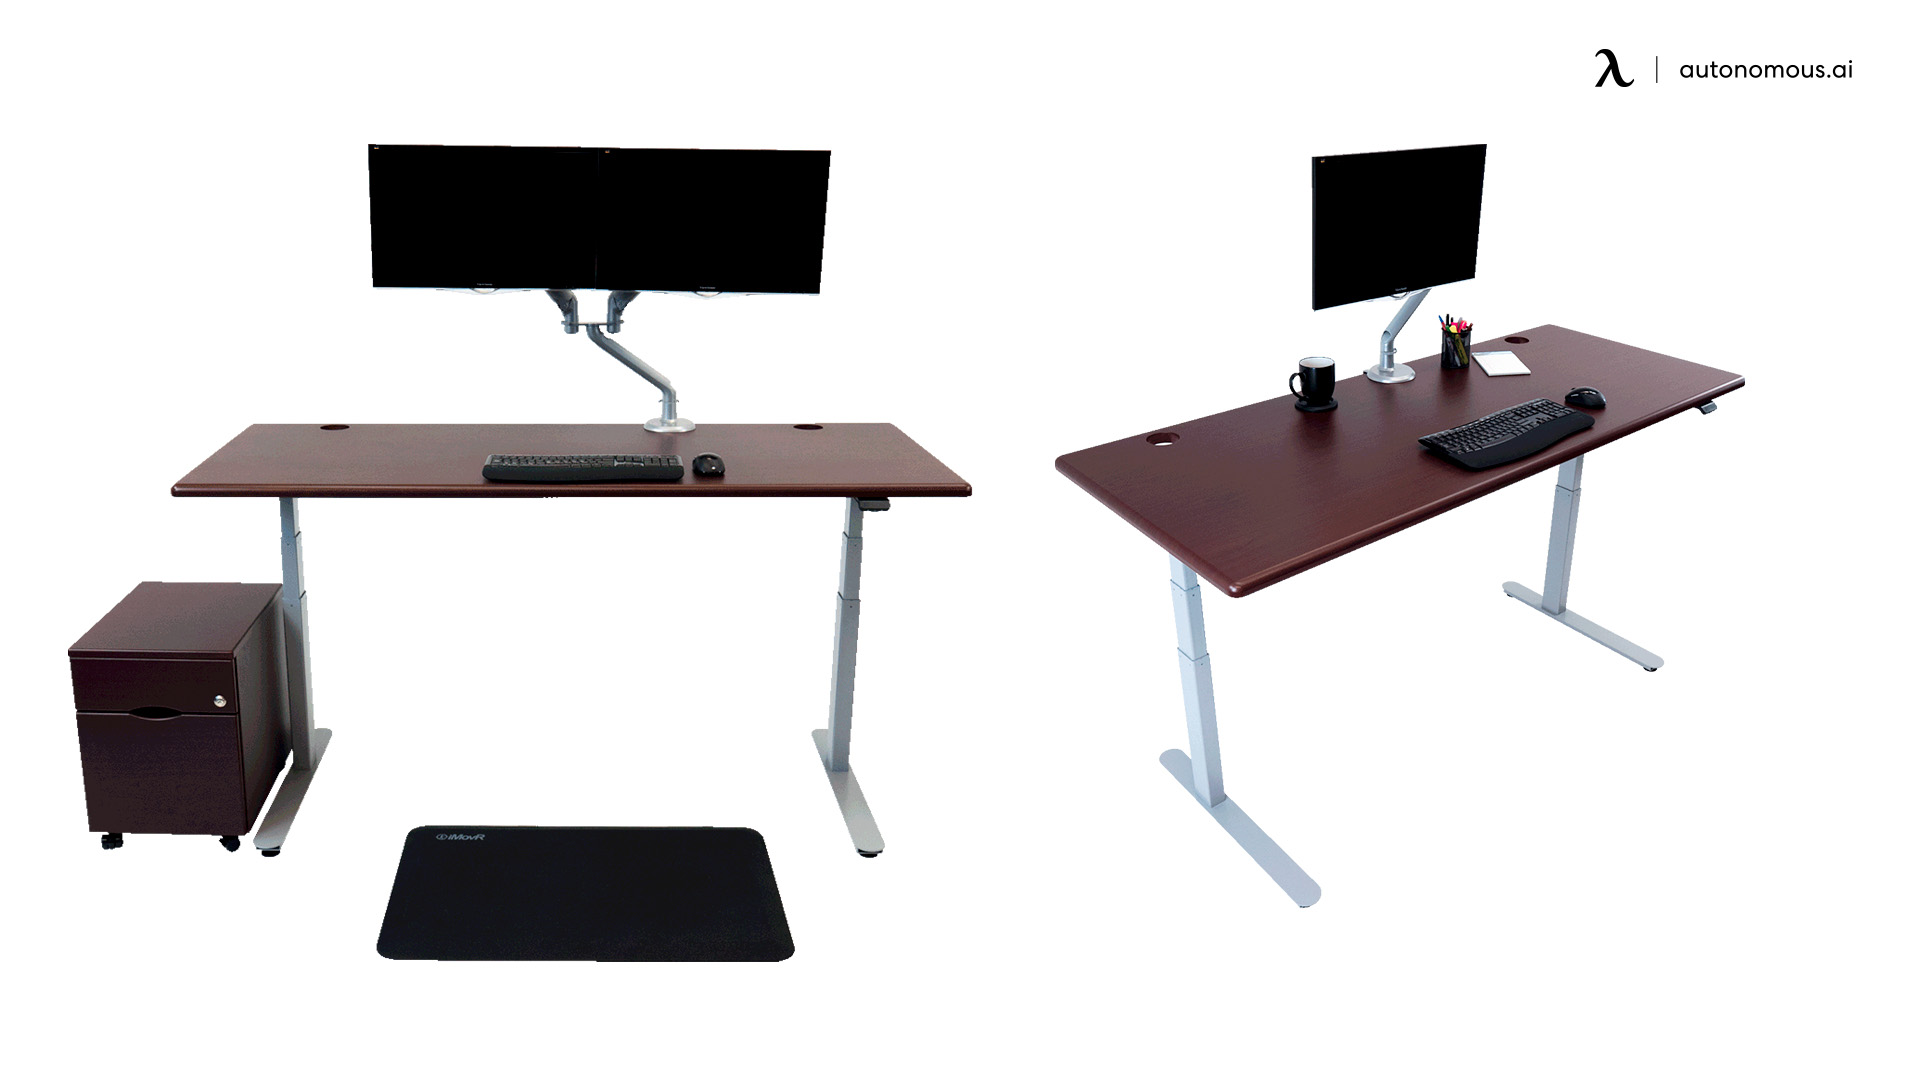 IMovR Lander Desk